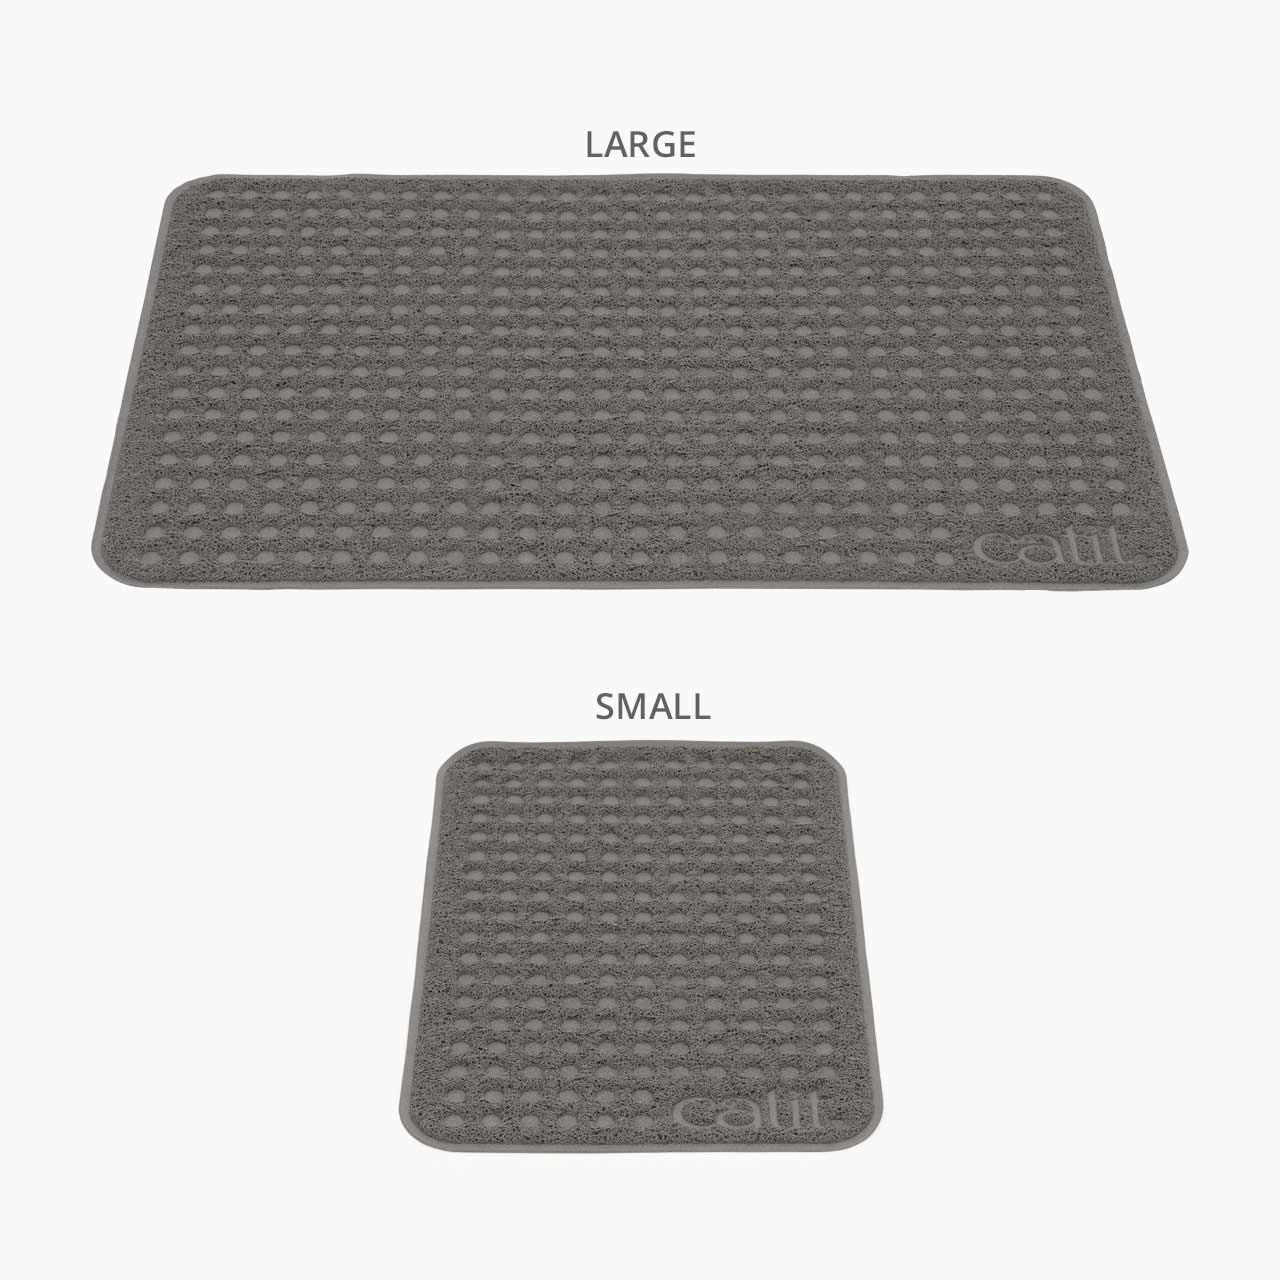 Two litter mat sizes